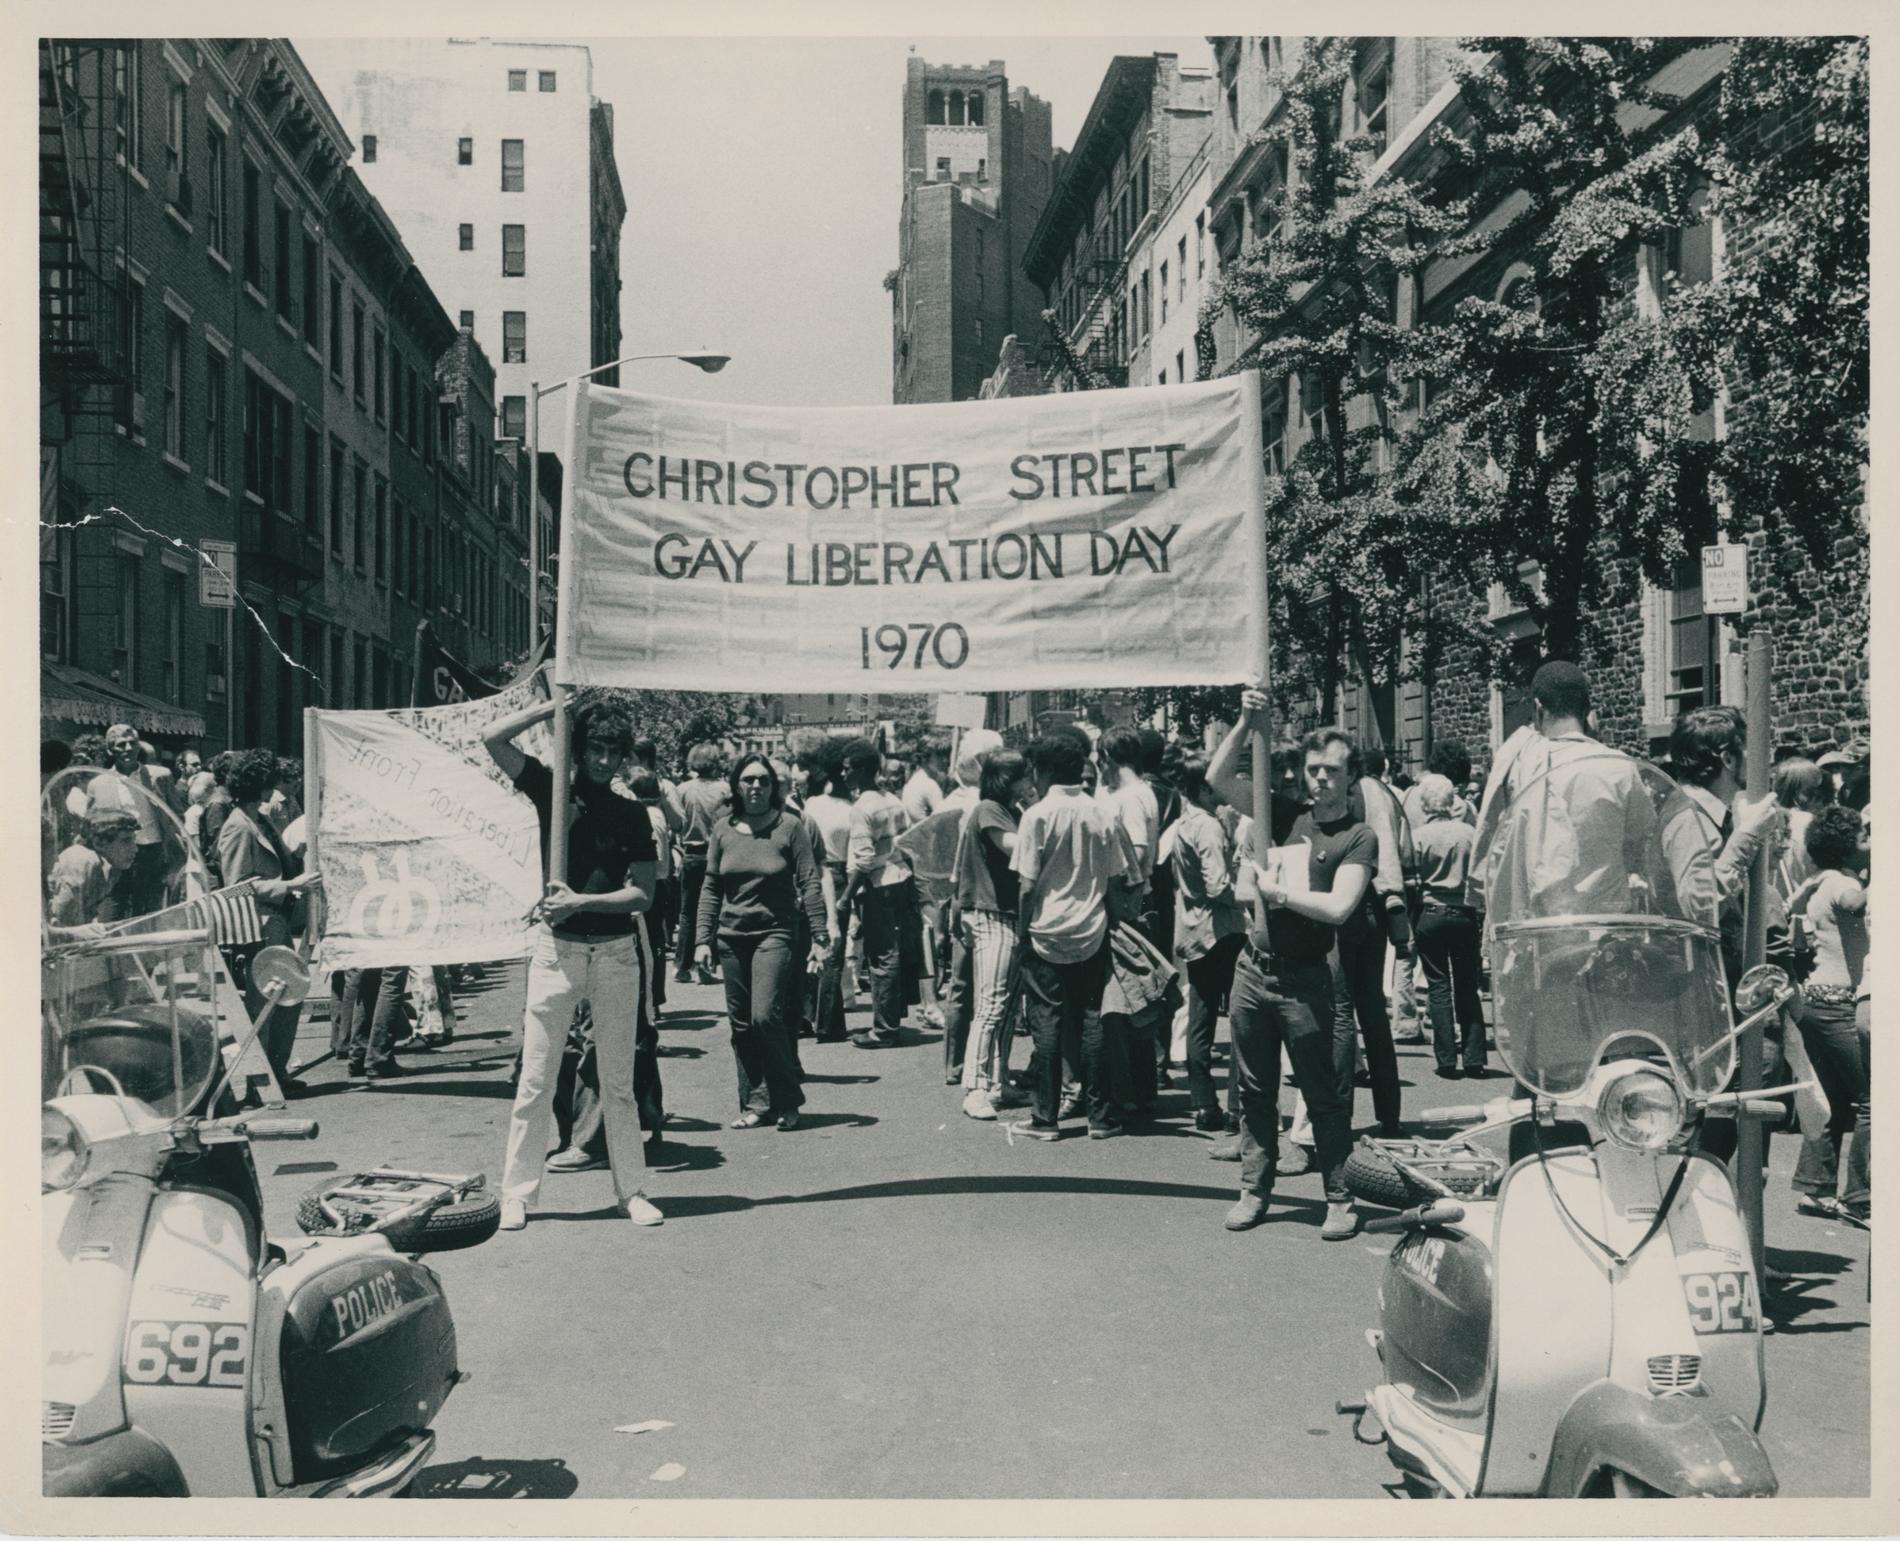 Den första prideparaden på Christopher street i New York, ett år efter det så kallade Stonewall-upproret.